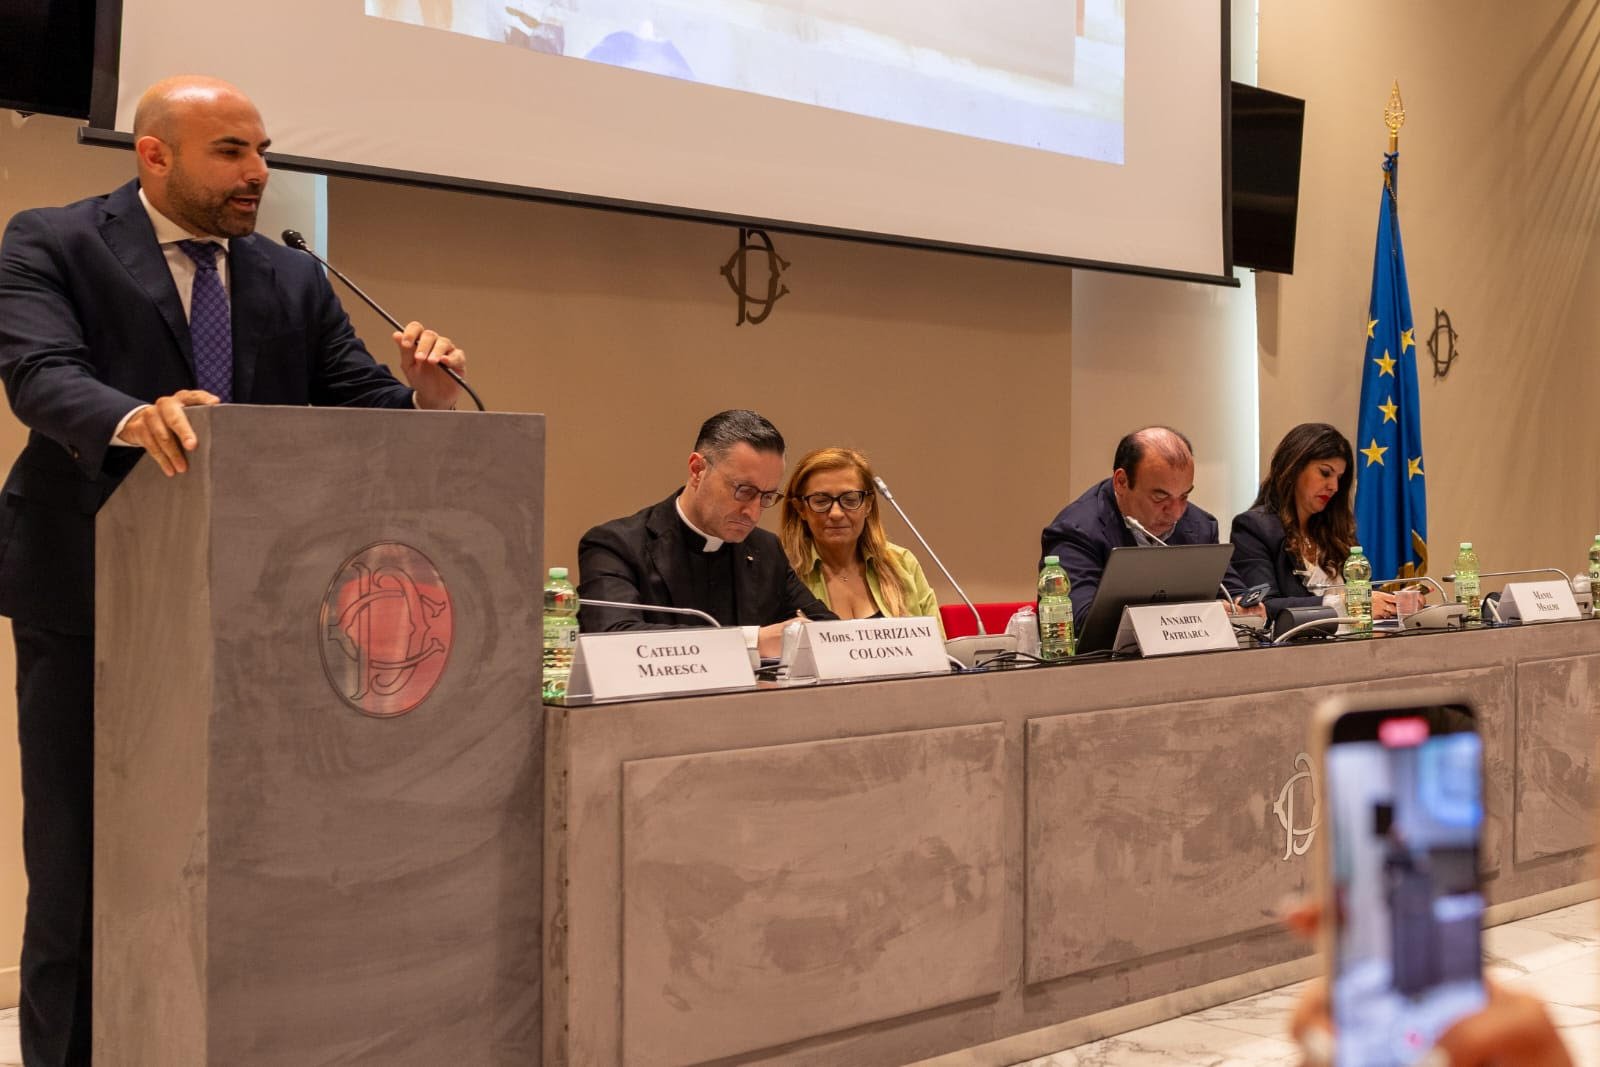 Conférence de Rome sur la crise ukrainienne : Mettre fin aux souffrances de la population civile Continentalnews